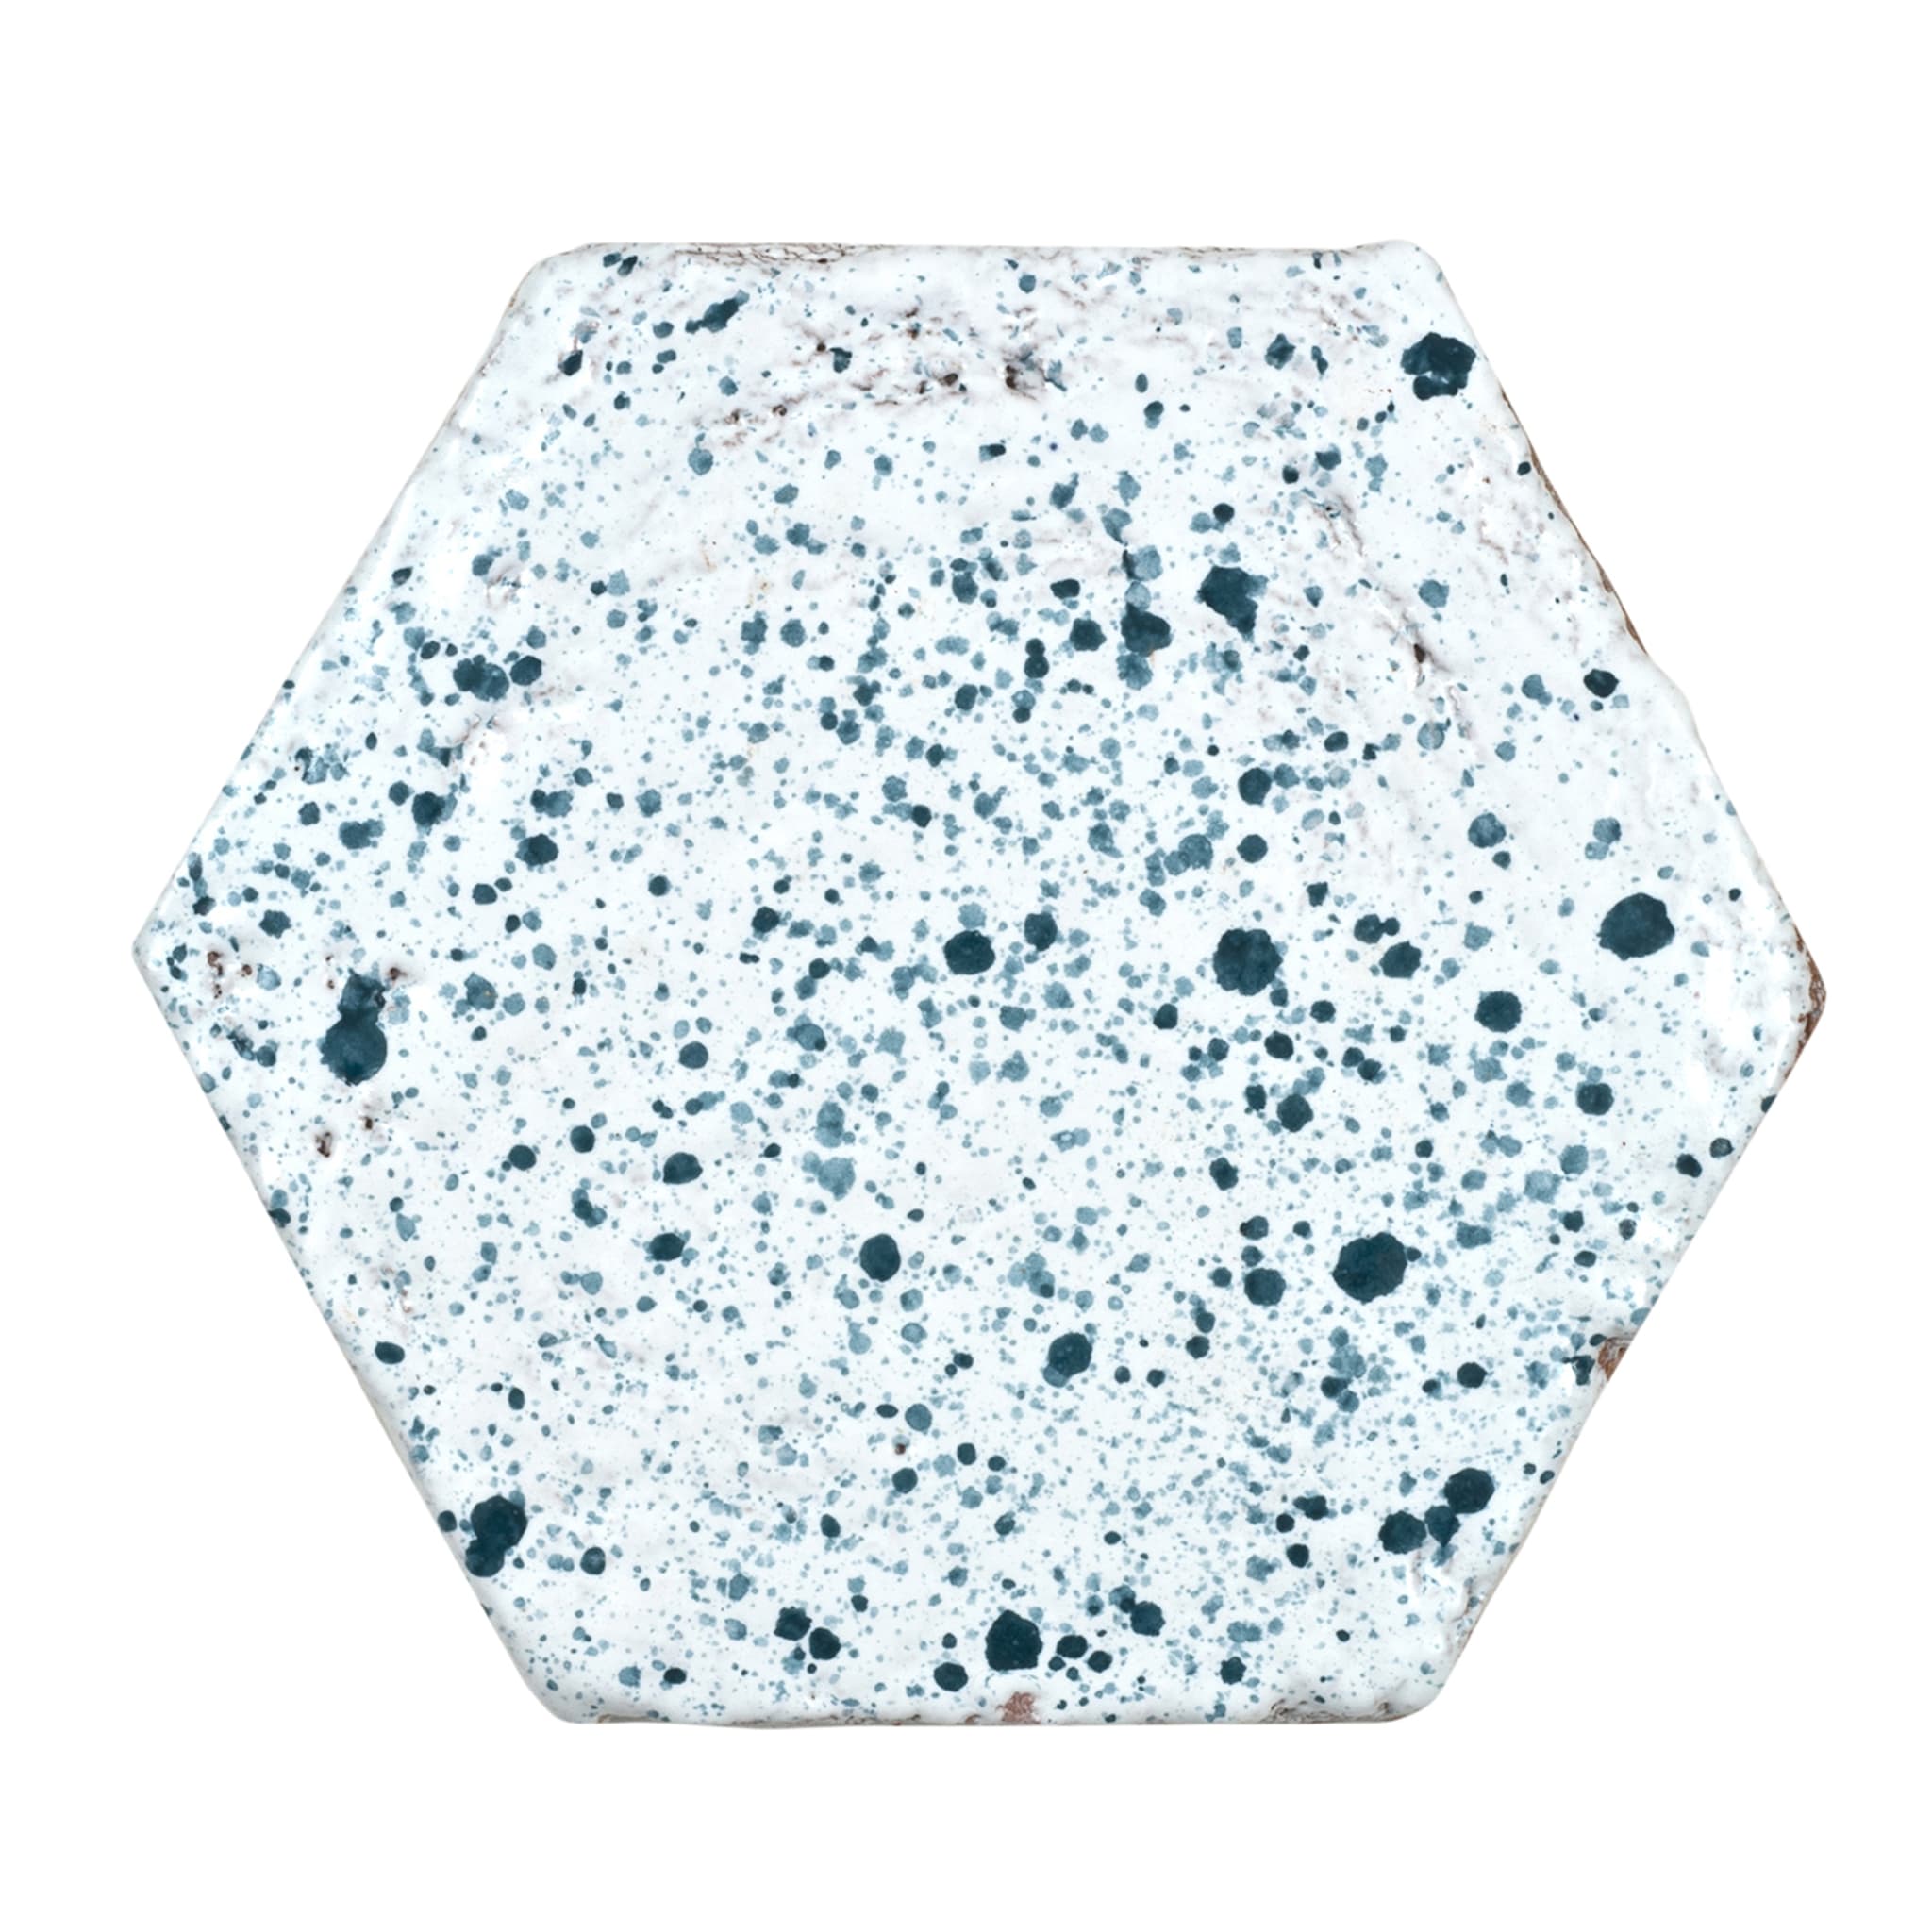 Schizzi Juego de 25 baldosas hexagonales verdes y blancas - Vista principal